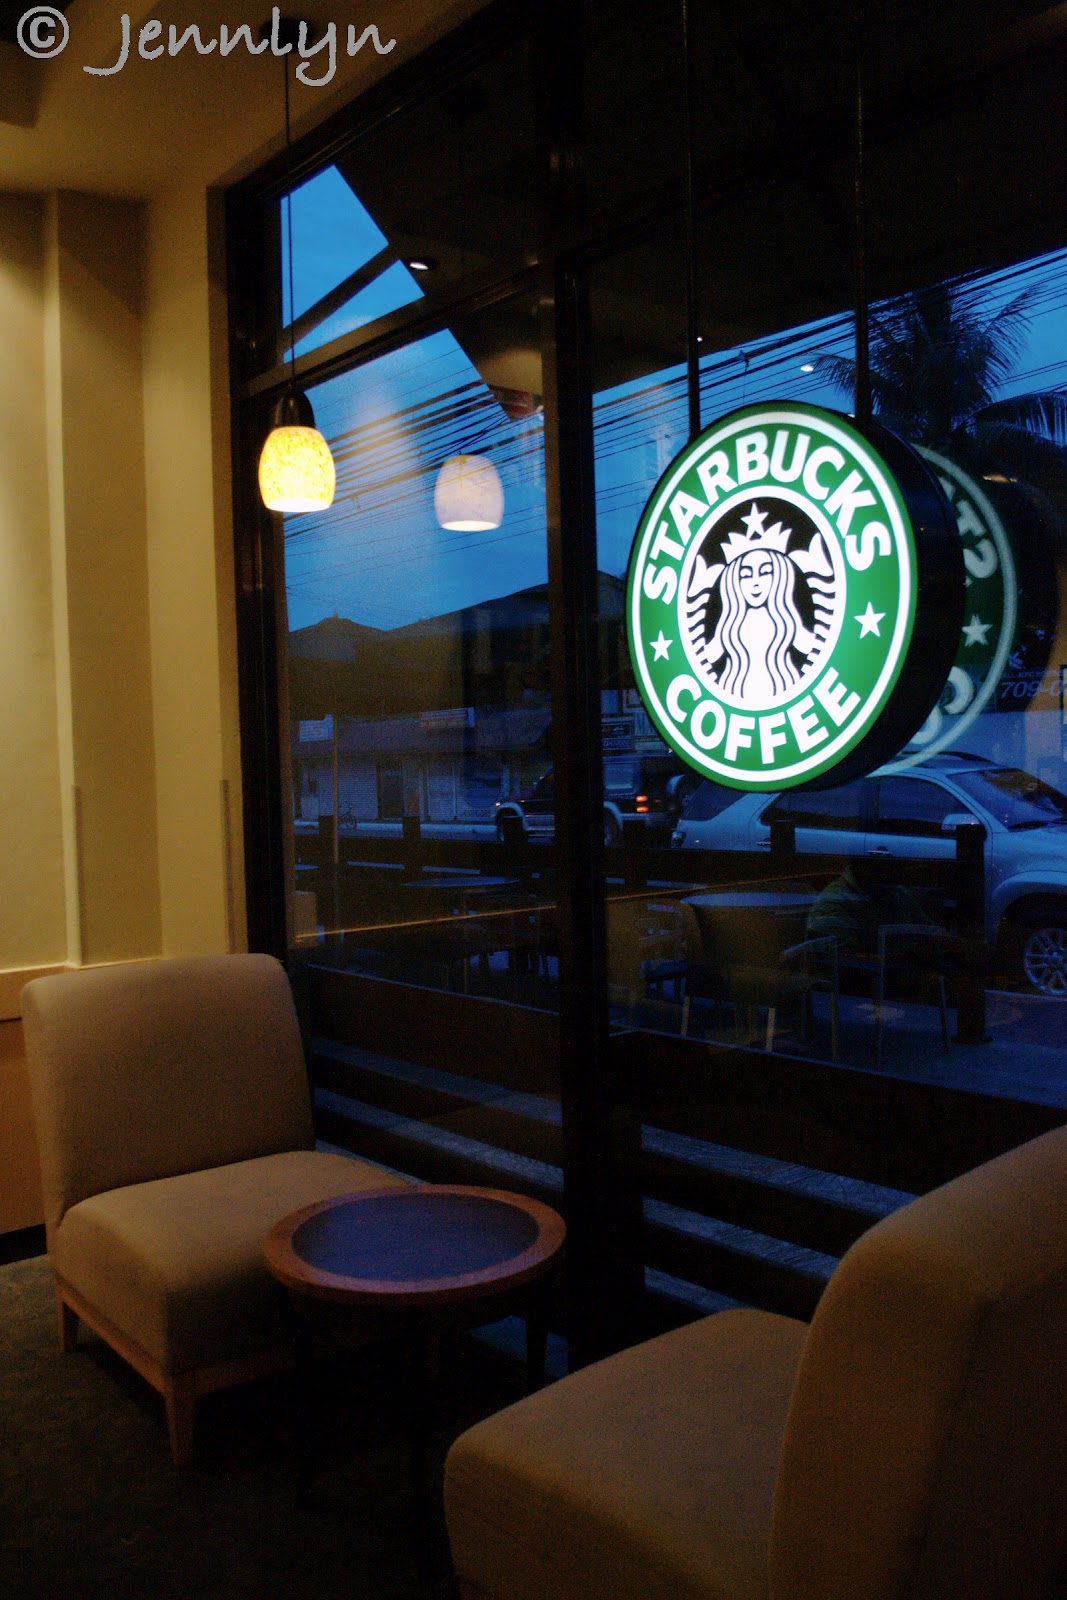 Destination Philippines Coffee Break at Starbucks